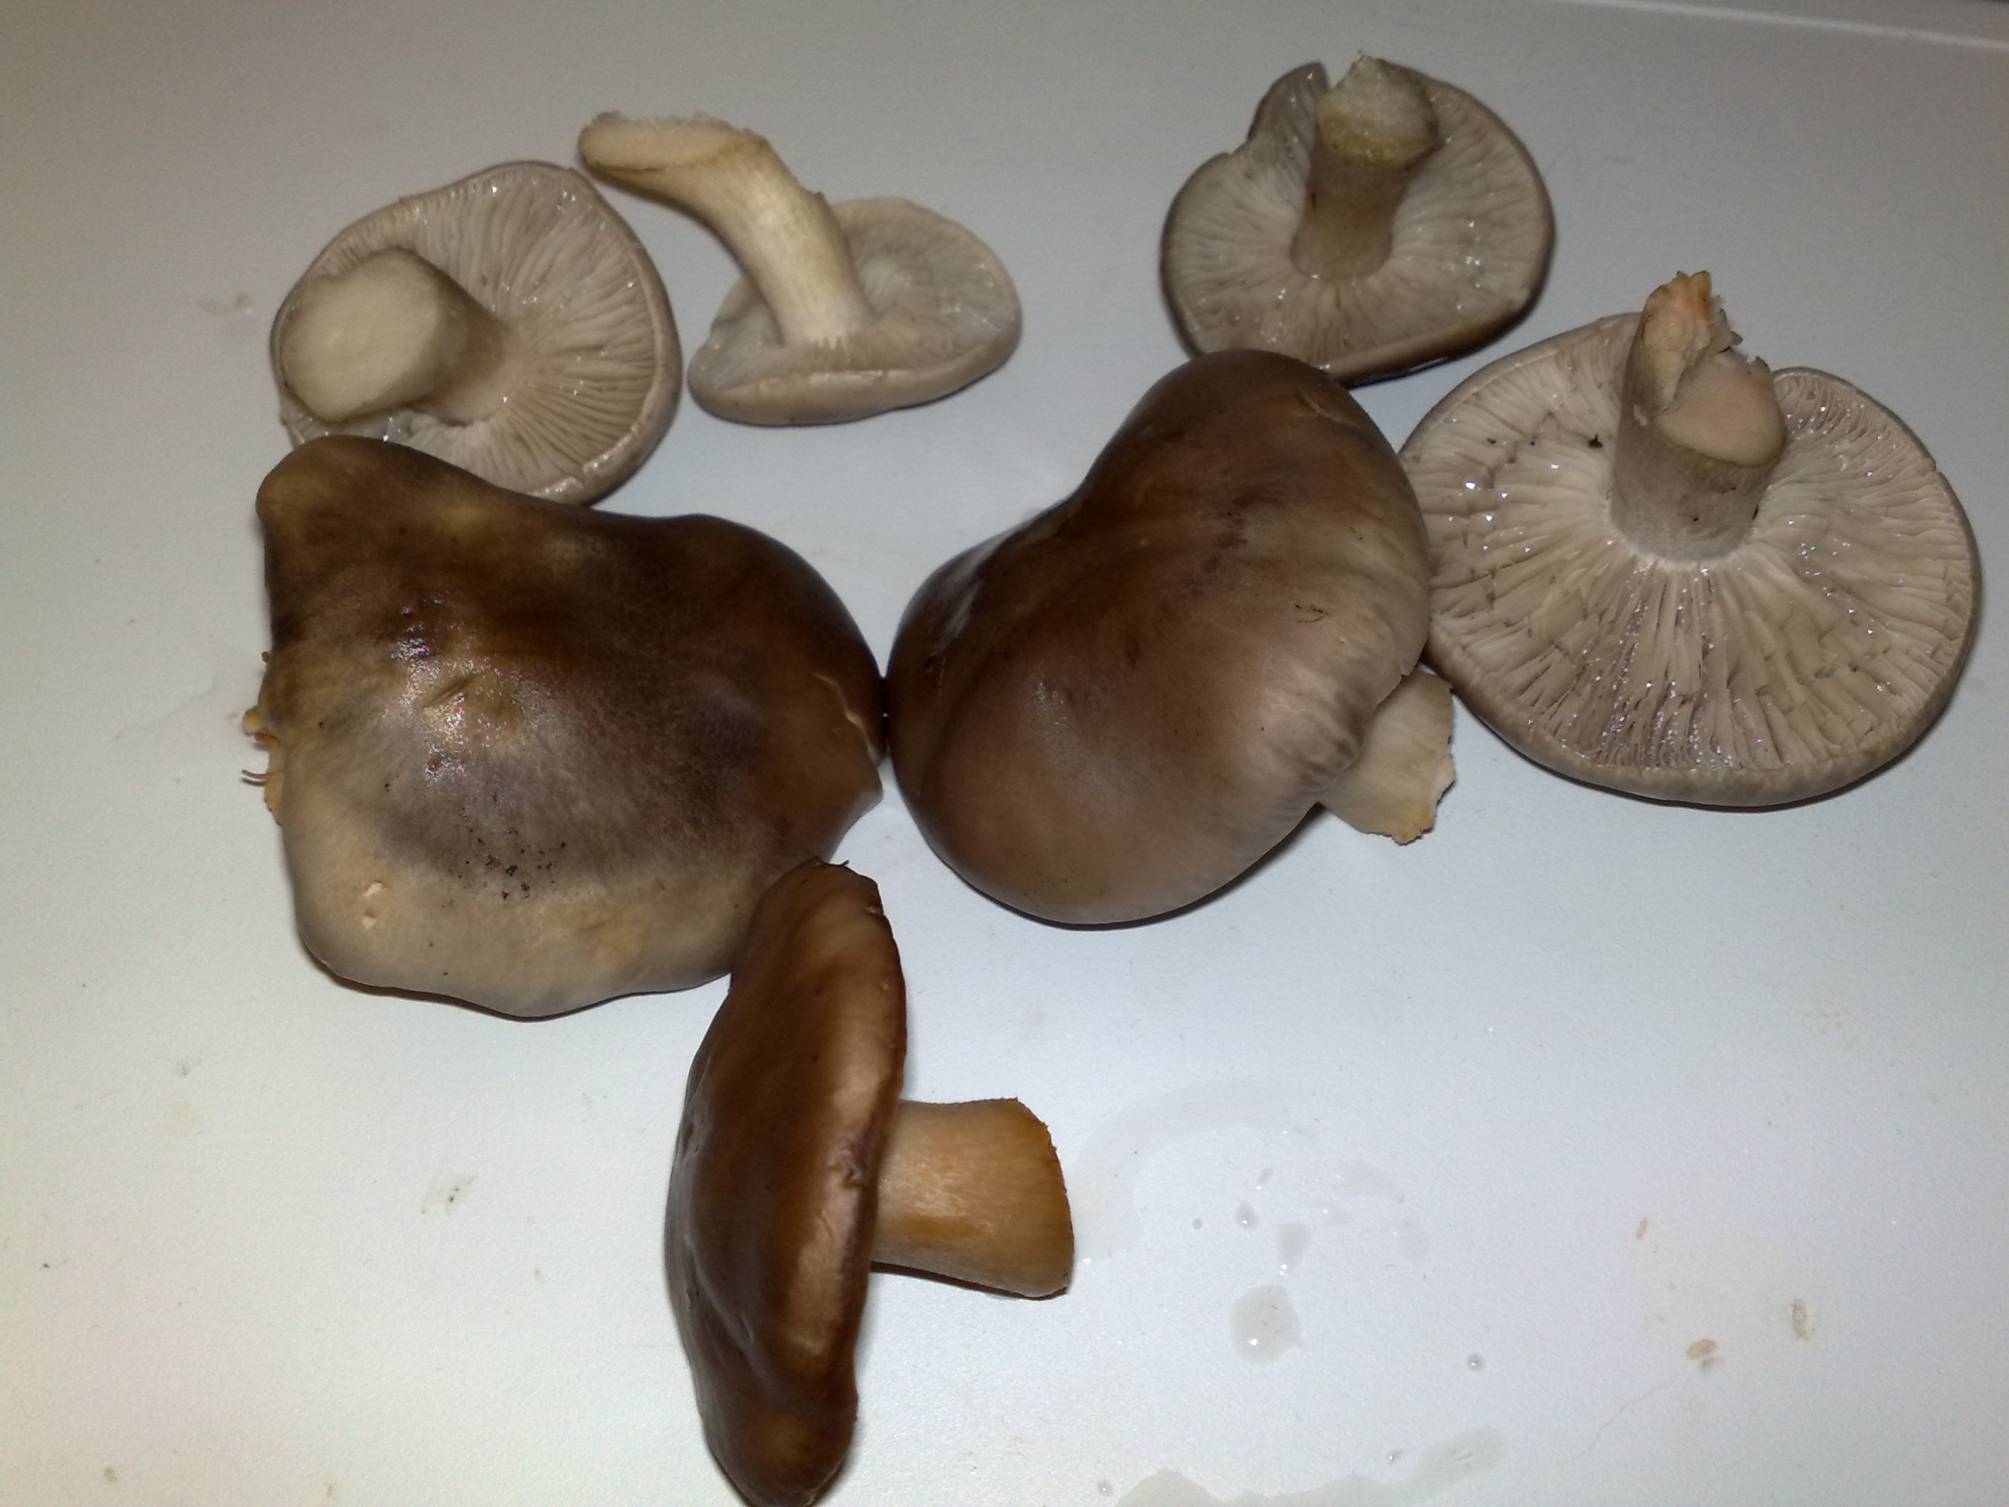 съедобные грибы воронежской области осенью фото названия